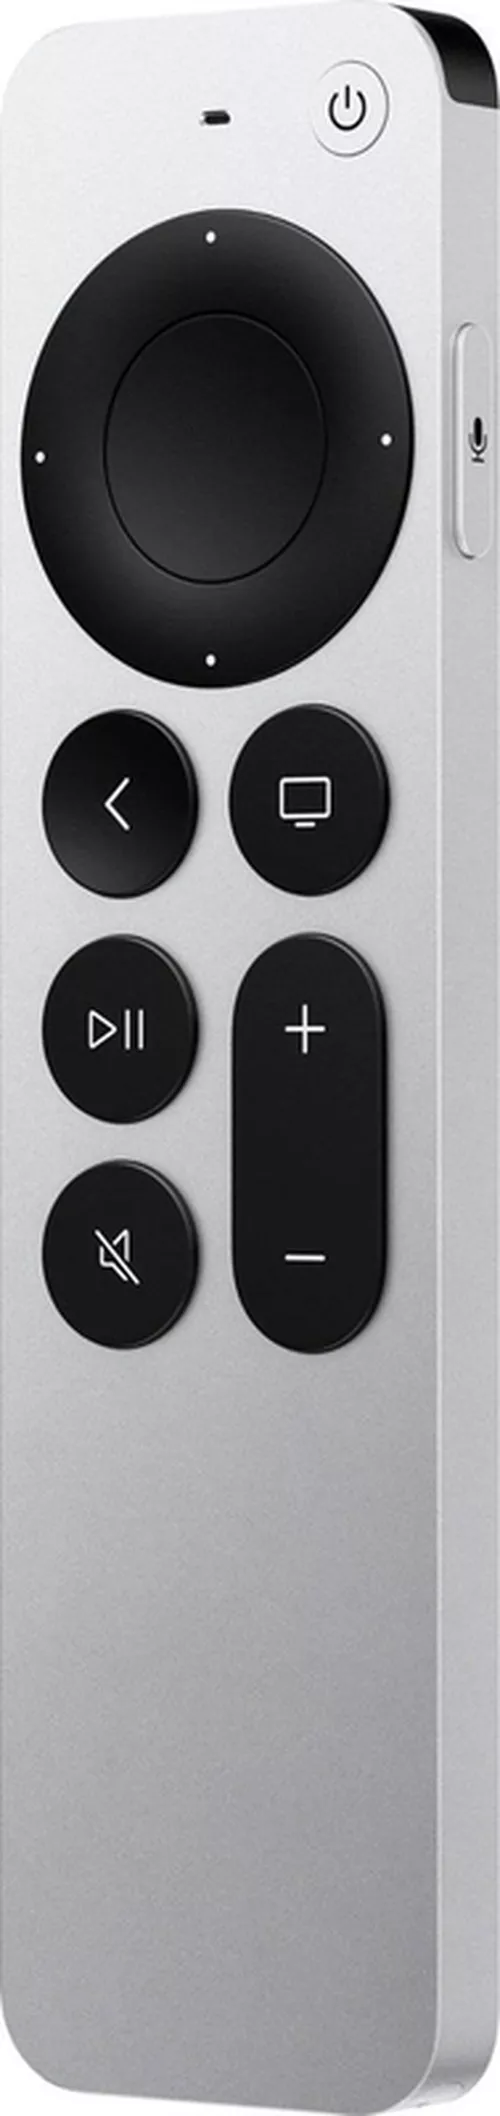 купить Пульт универсальный Apple TV Remote3 MNC83 в Кишинёве 